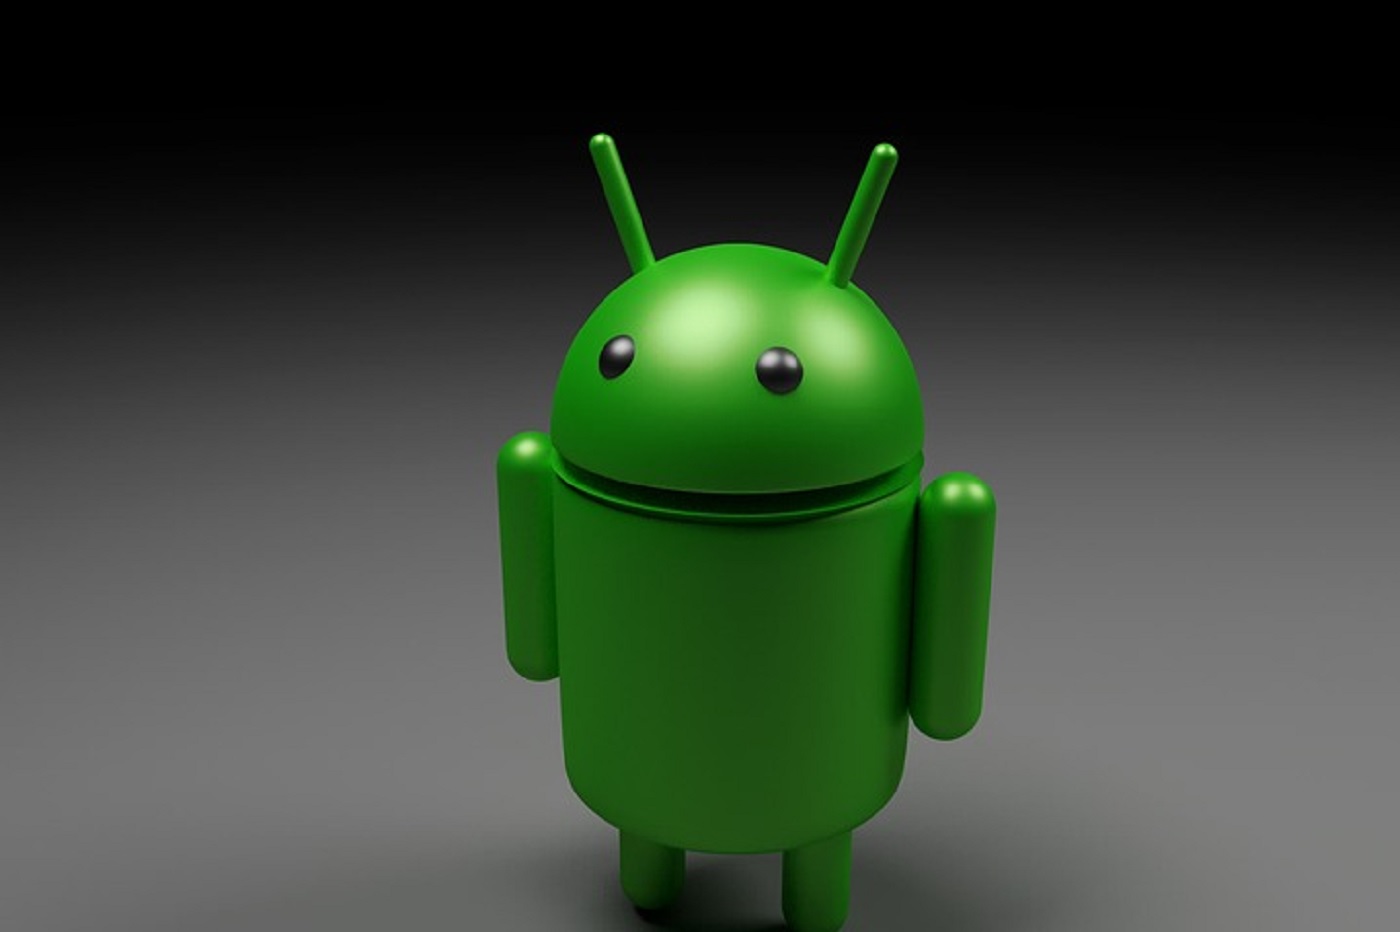 Ce smartphone Android financé par les USA embarque 2 malwares